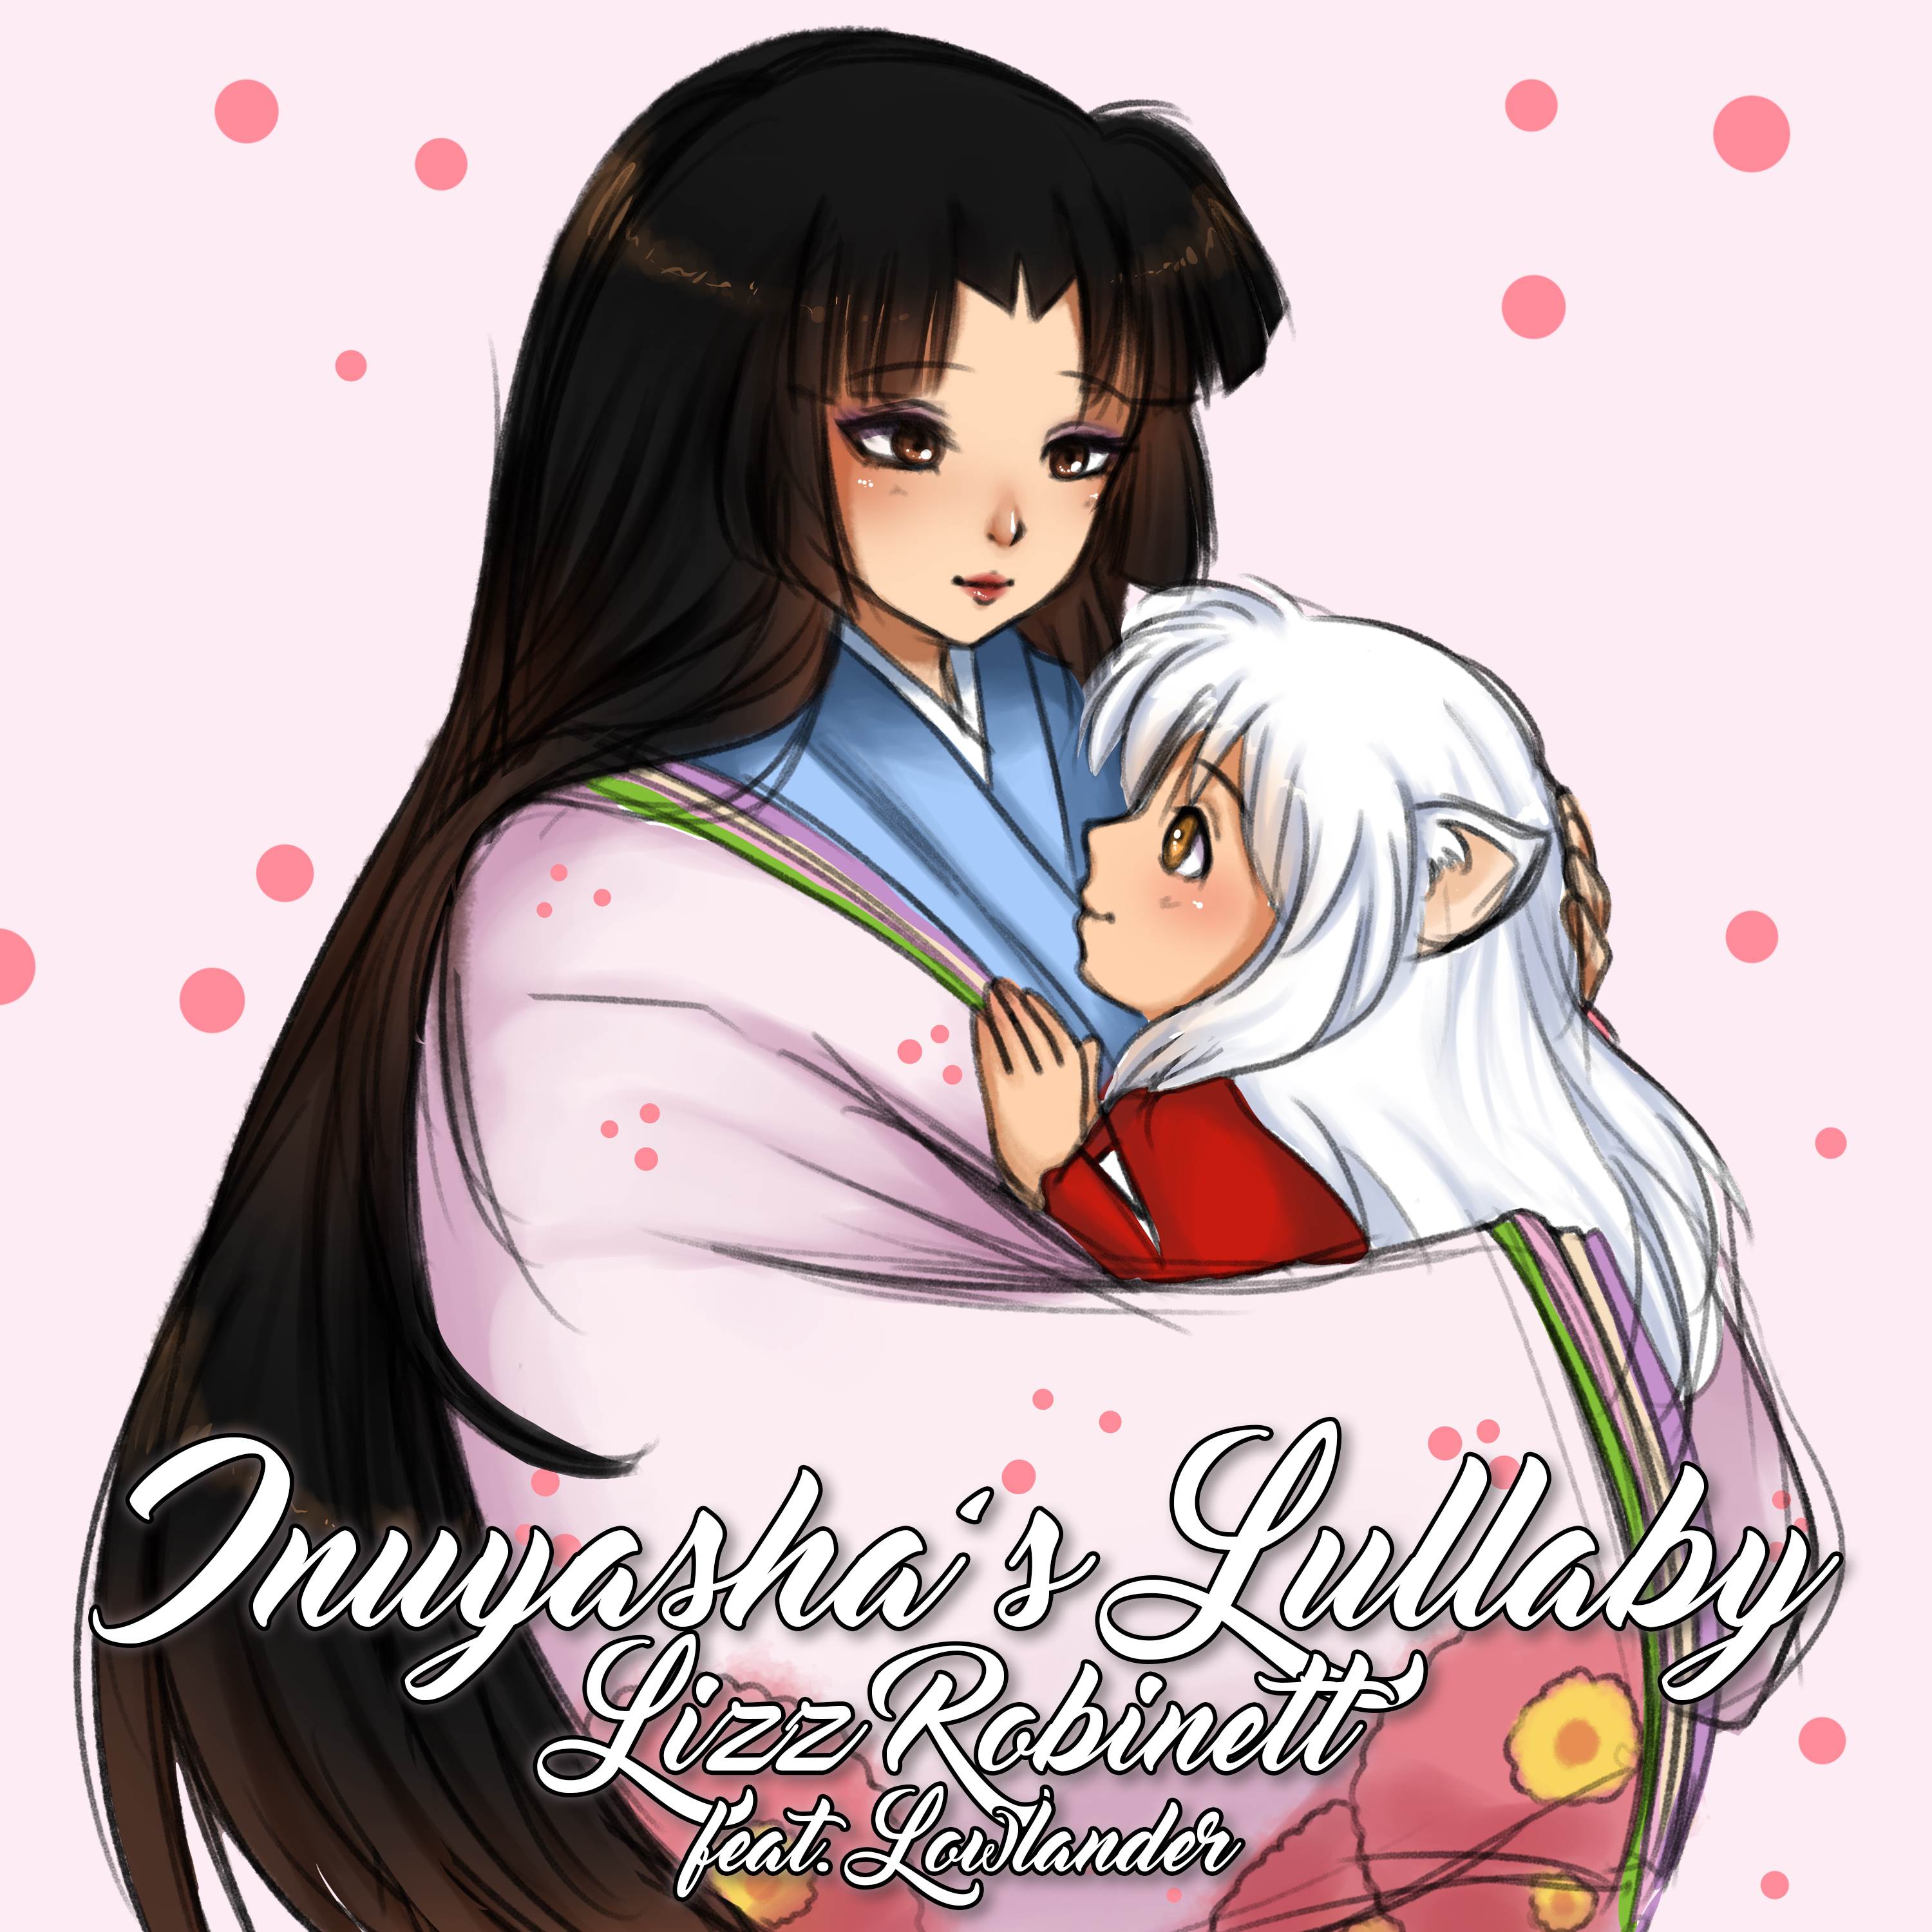 Inuyasha's lullaby